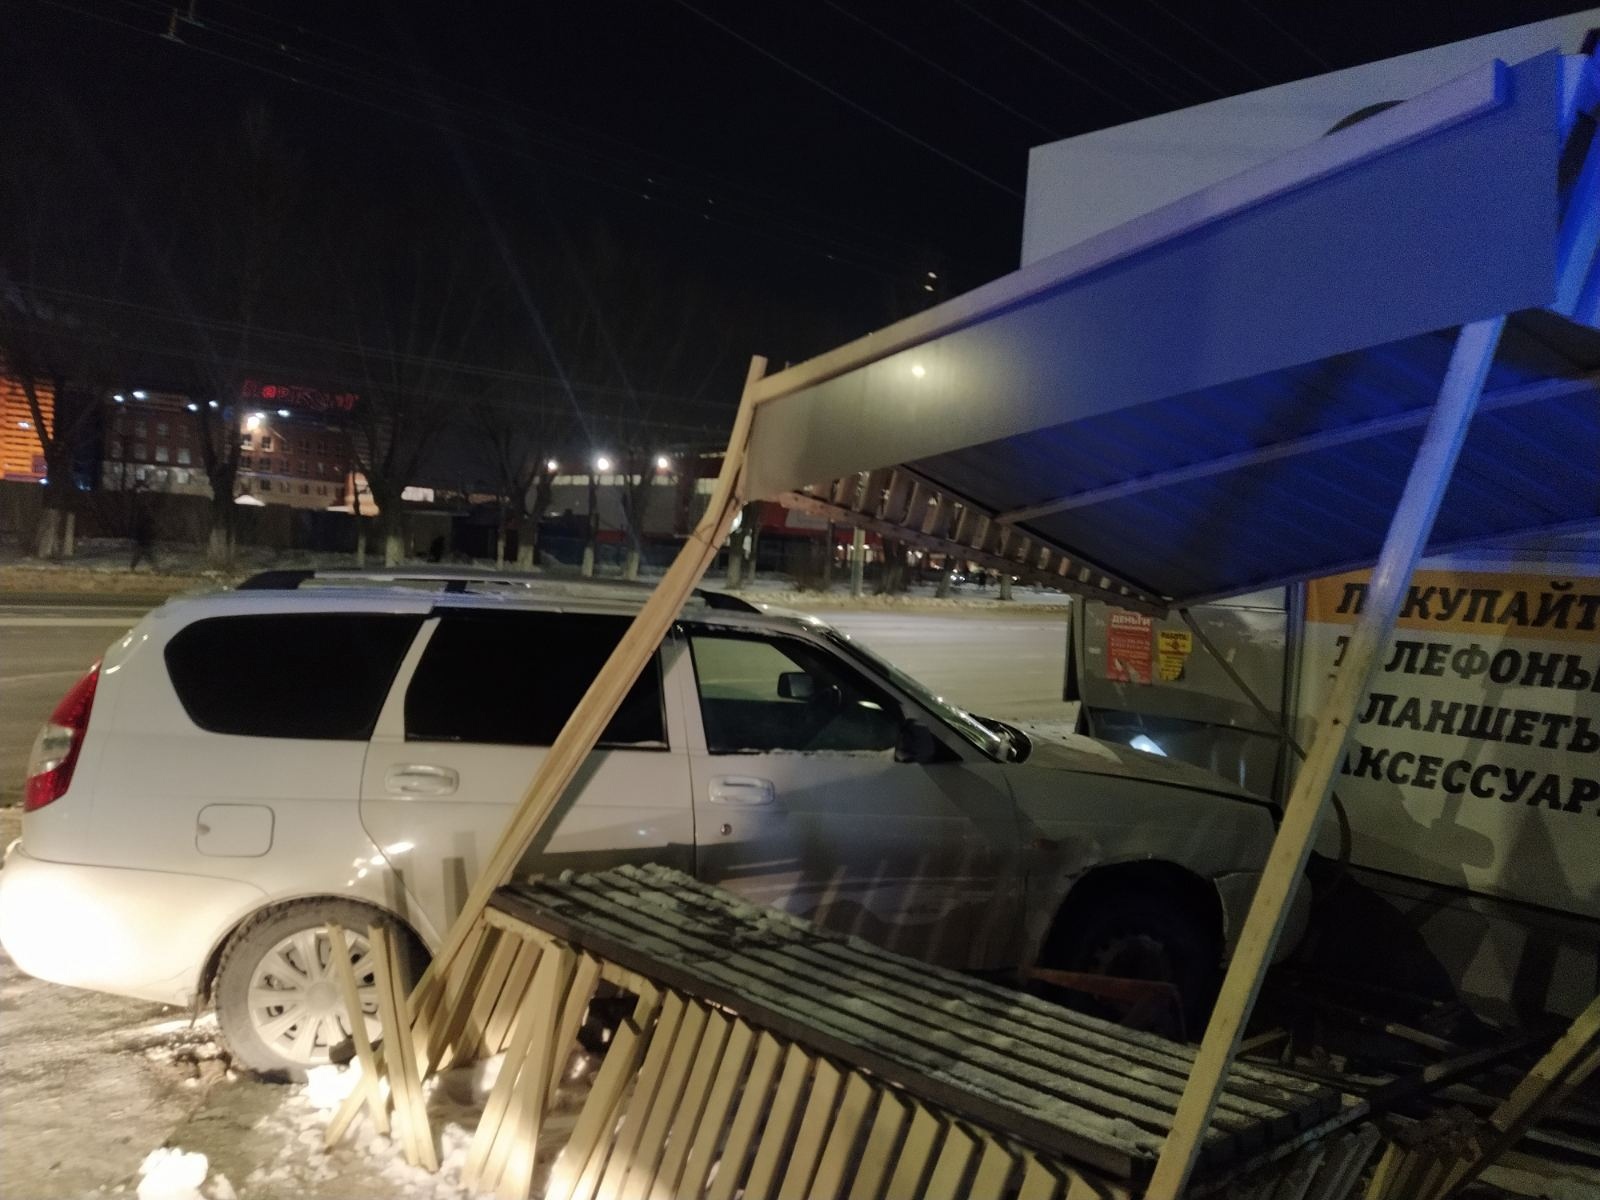 10 марта 2022 года Toyota, разворачиваясь на улице Братьев Кашириных, отправила Lada Priora в овощной киоск